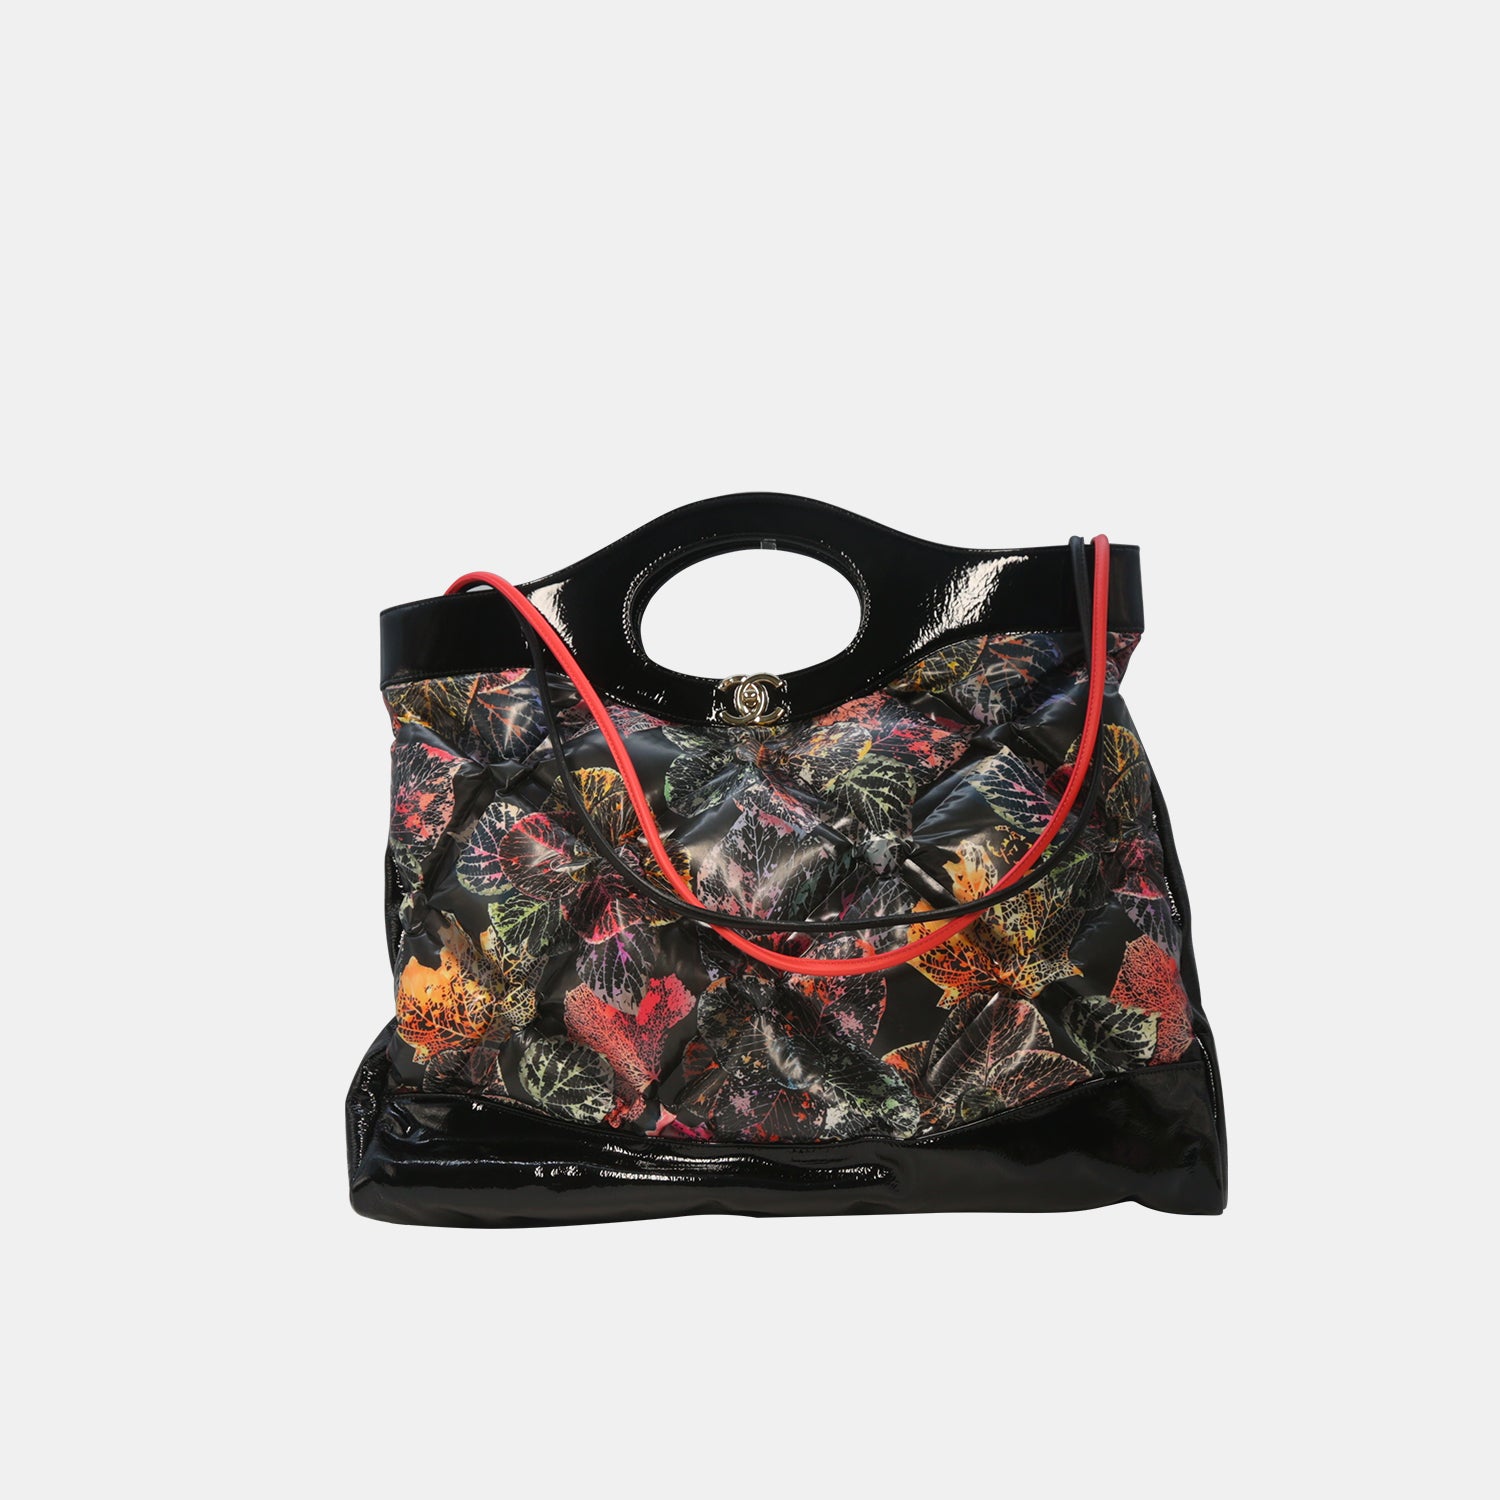 Chanel Large 31 Shopping Shoulder Bag Beige - Shop Now